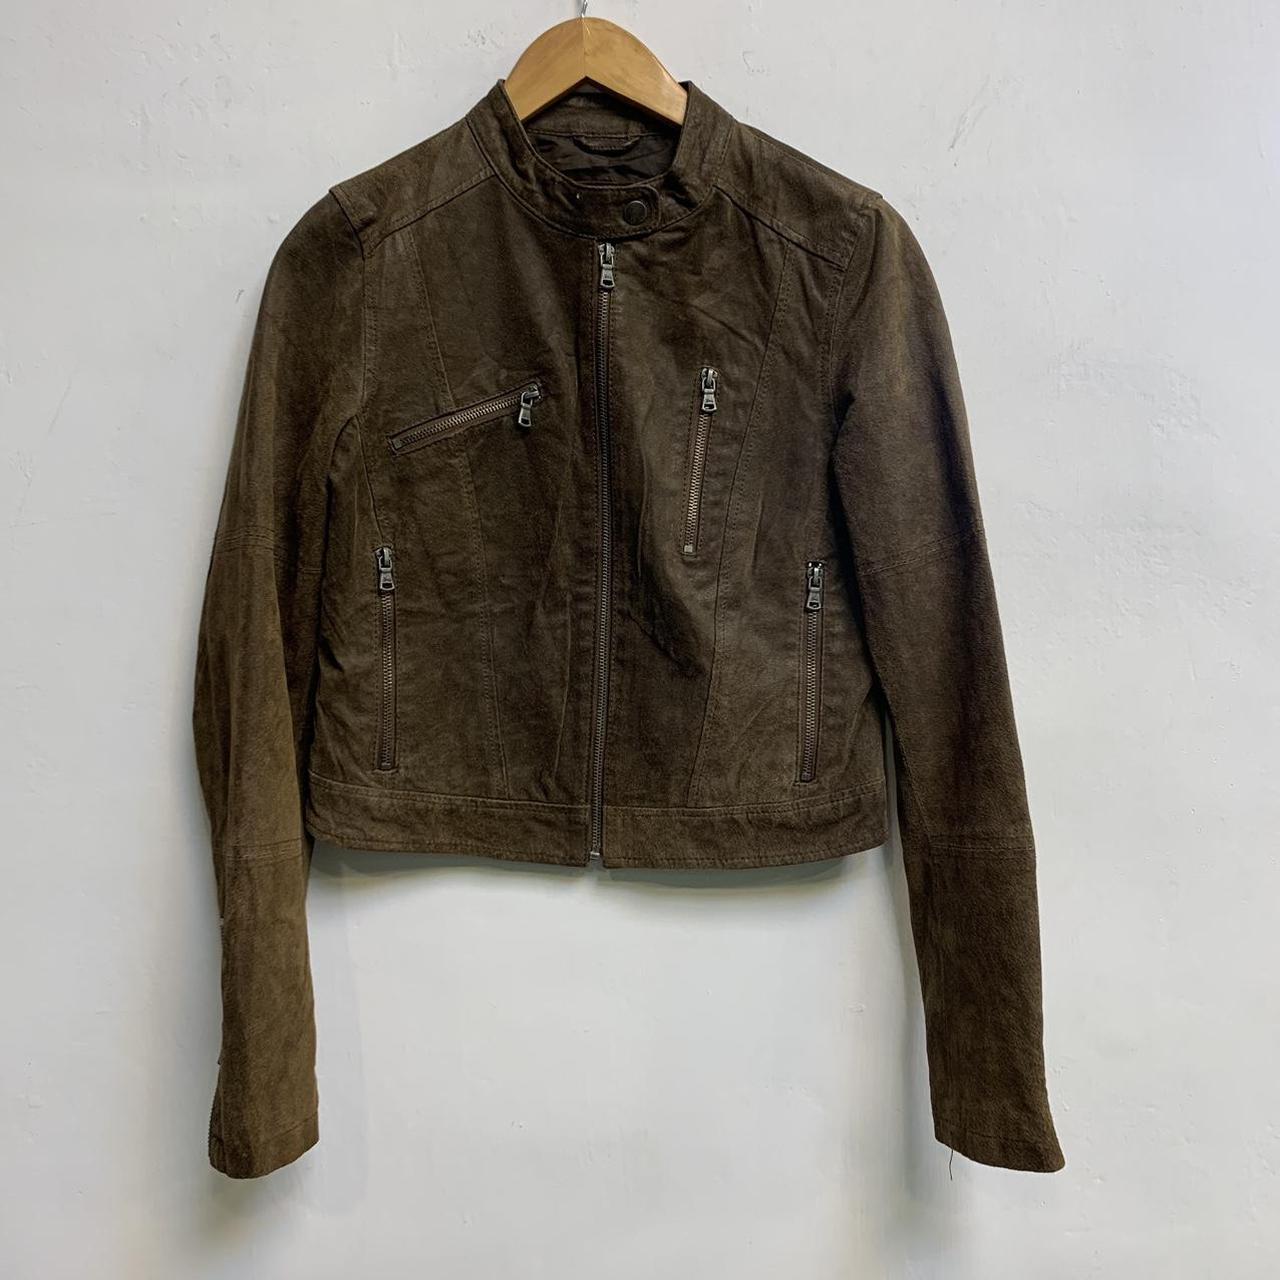 Levi’s brown leather jacket Vintage jacket Shell... - Depop